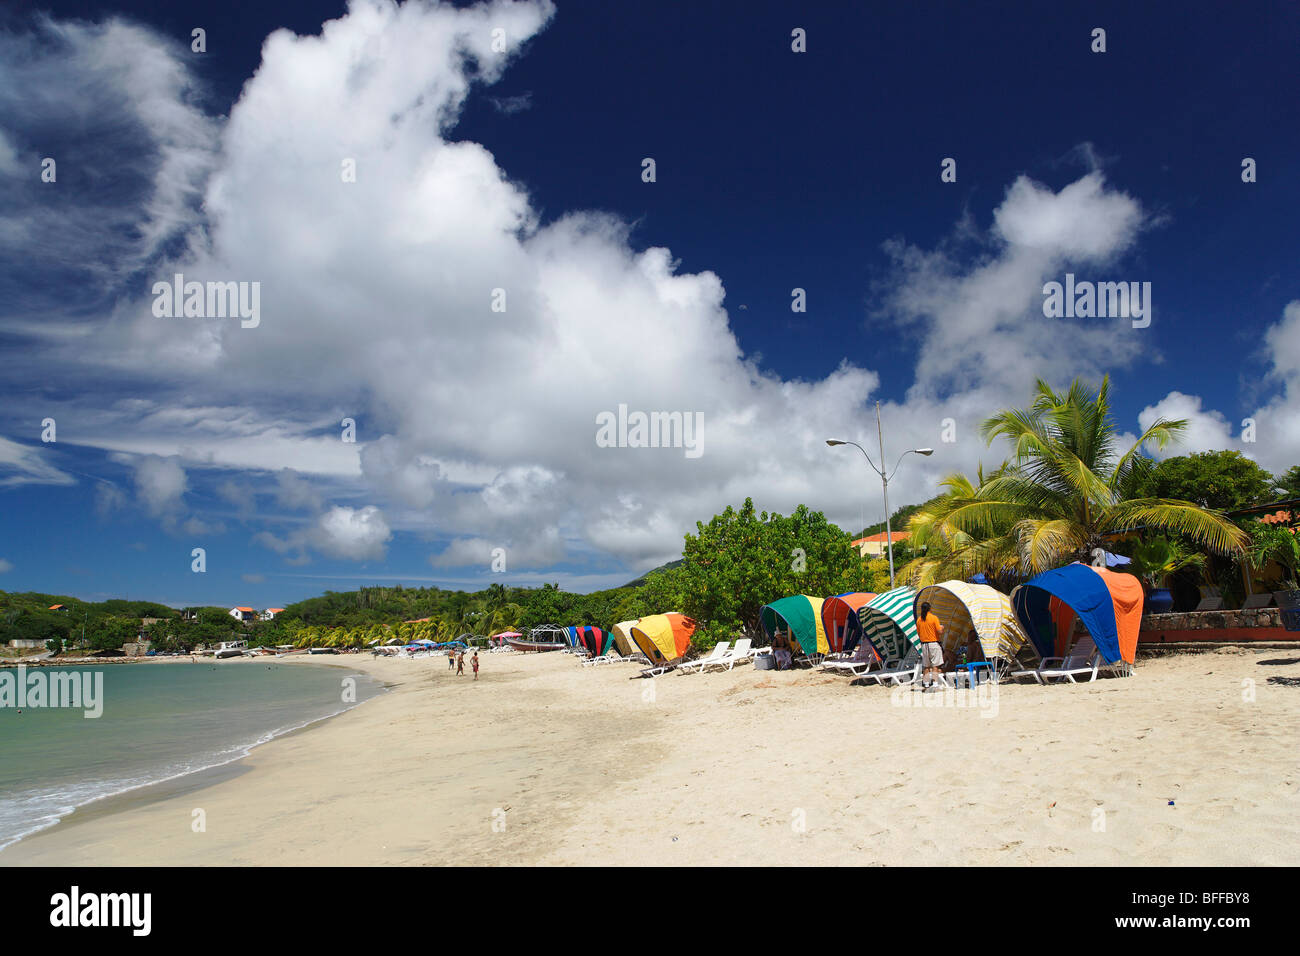 View along sandy beach, Playa Zaragoza, Pedro Gonzales, Isla Margarita, Nueva Esparta, Venezuela Stock Photo